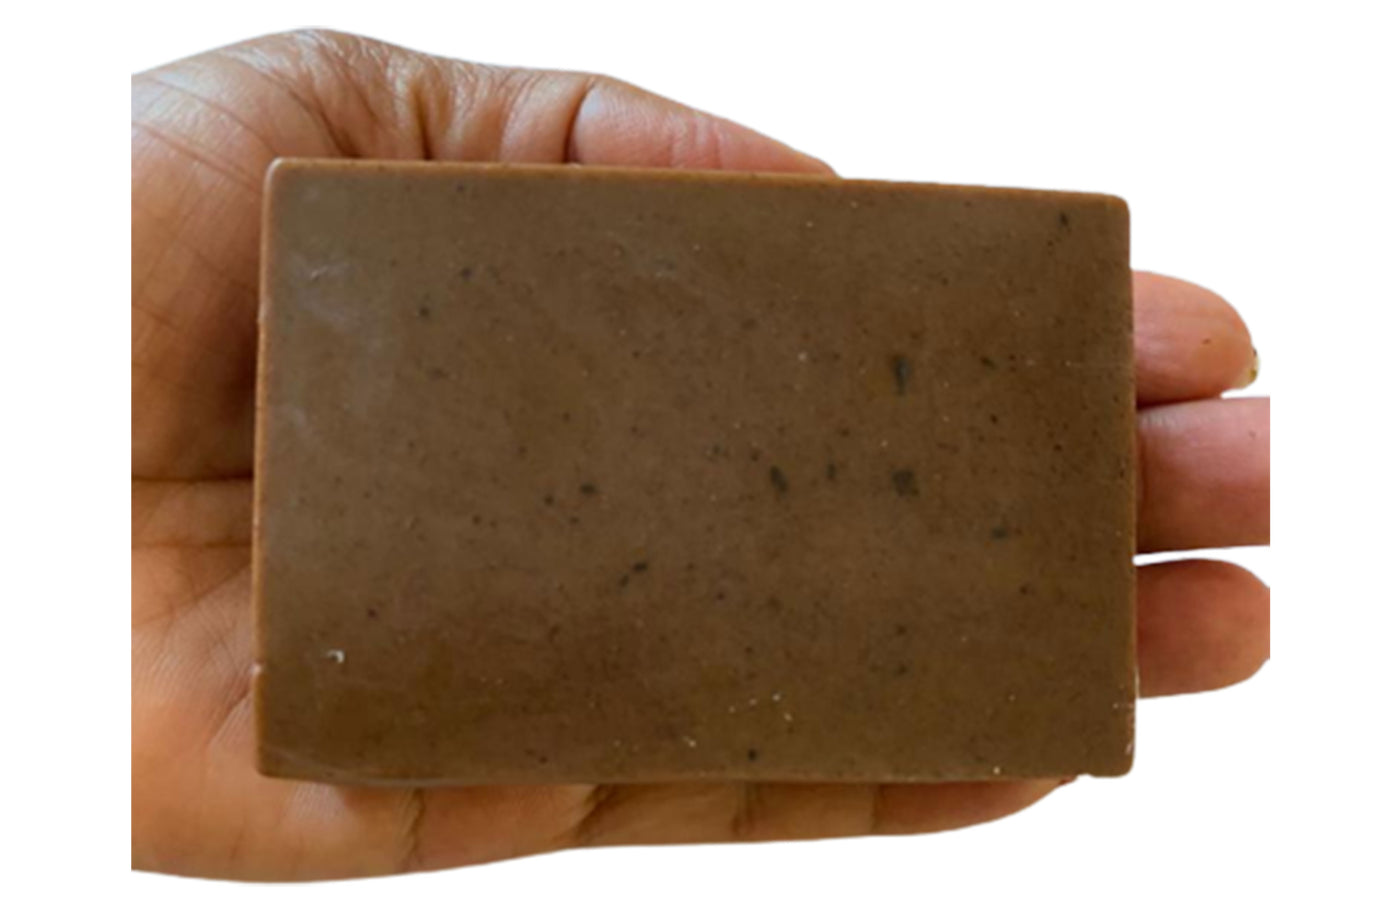 Chocolate & Orange Natural Vegan Handmade Scented Soap Bar